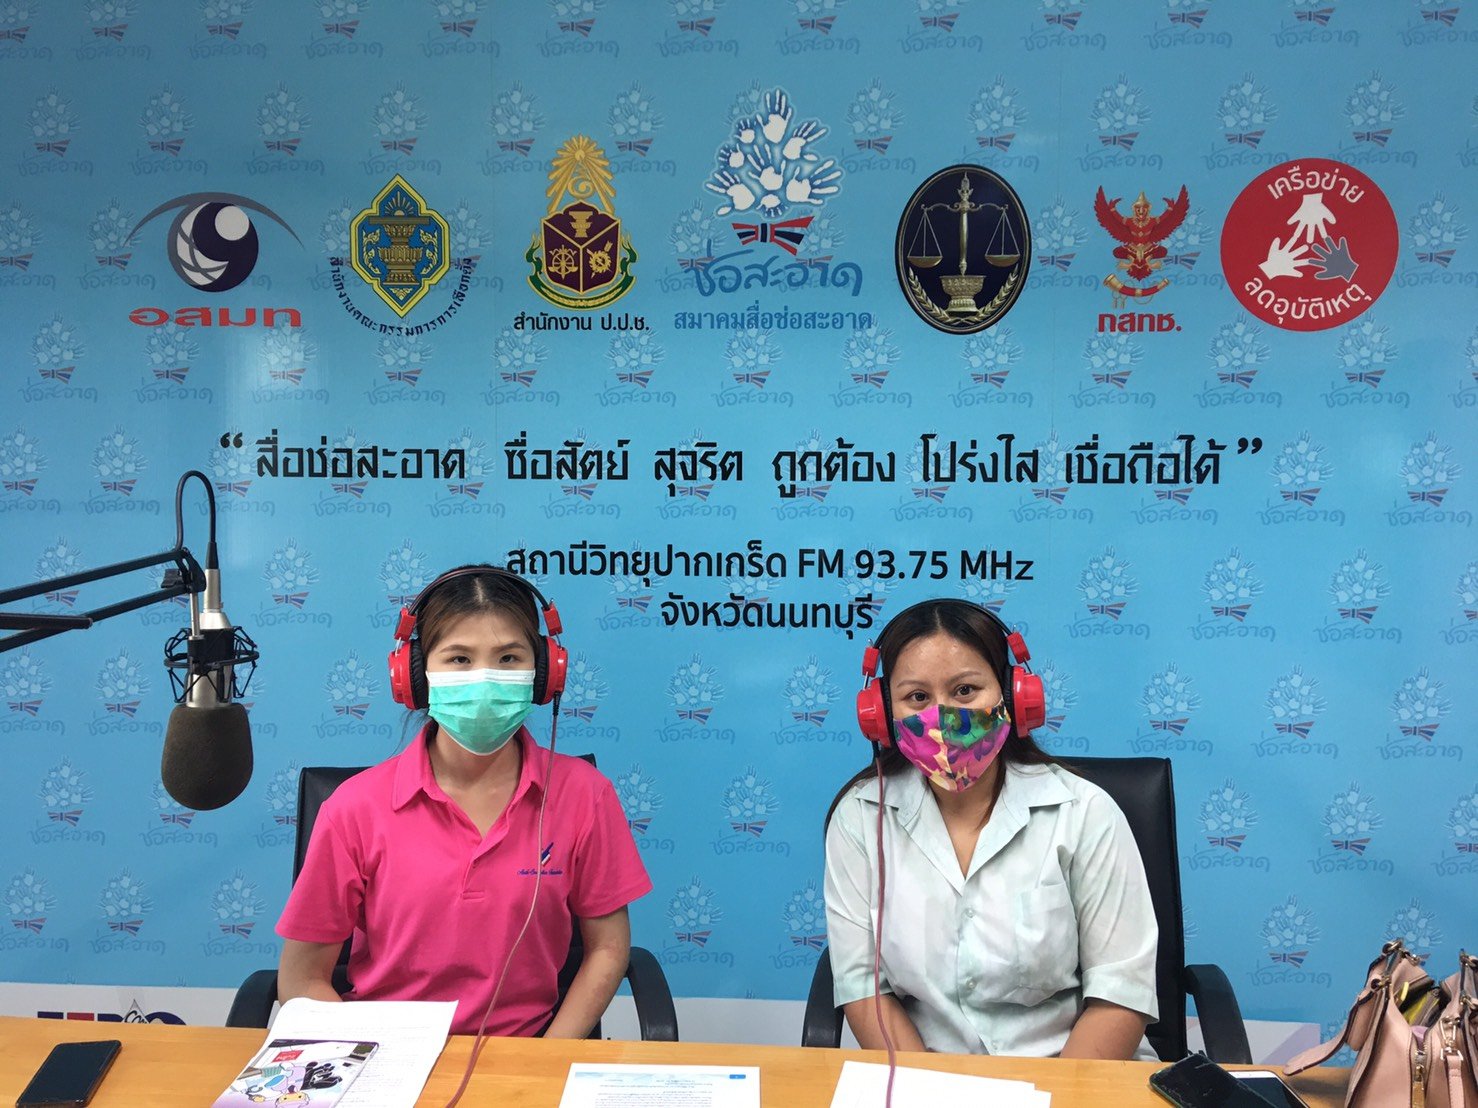 รายการ “คนไทยไม่ทนต่อการทุจริต” วันเสาร์ที่ 19 มิถุนายน 2564 เวลา 18.30-19.00 น.